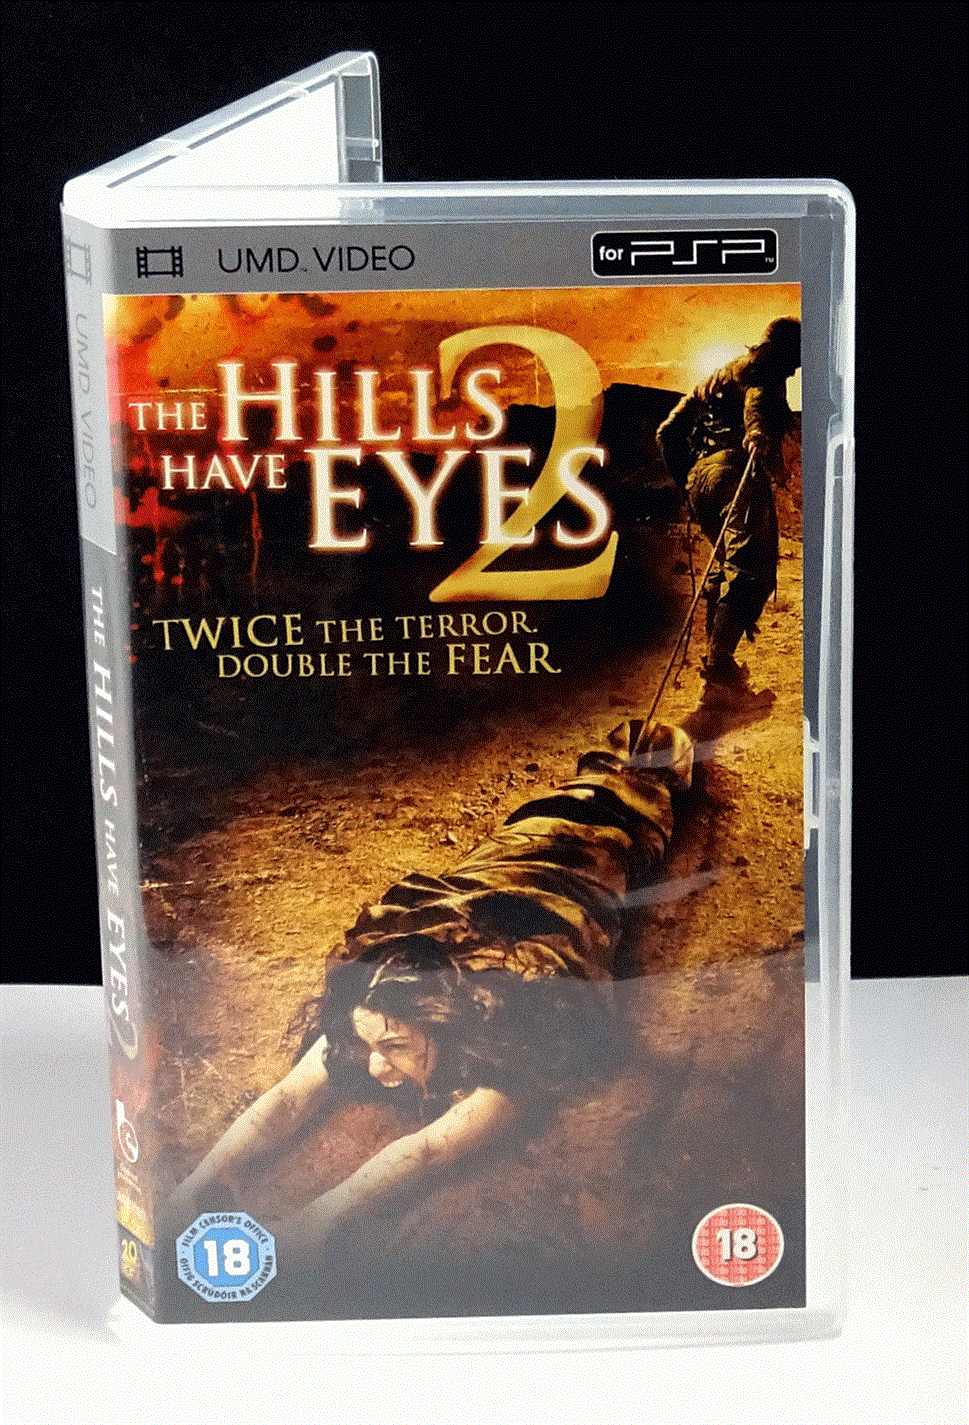 The Hills Have Eyes 2 (UMD for PSP) - UK Seller